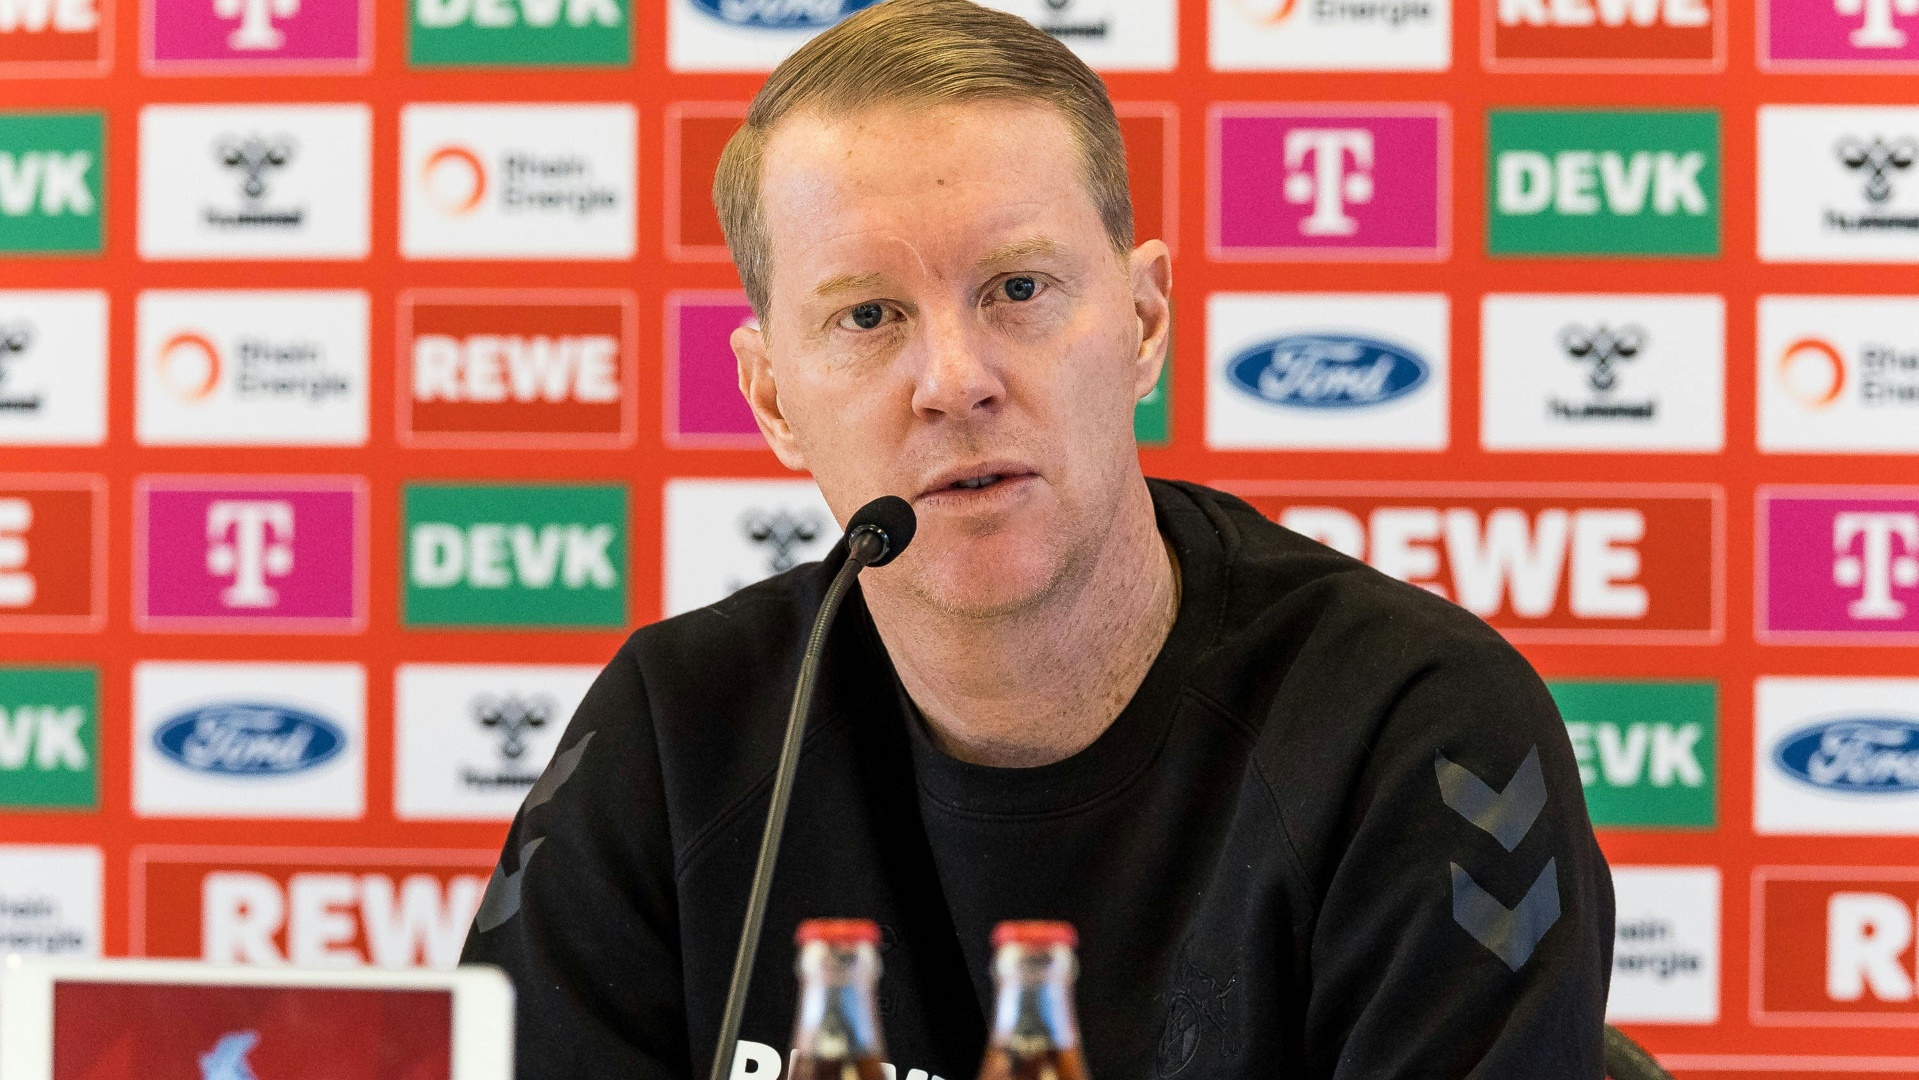 Timo Schultz, der Trainer des 1. FC Köln, glaubt an seine Mannschaft